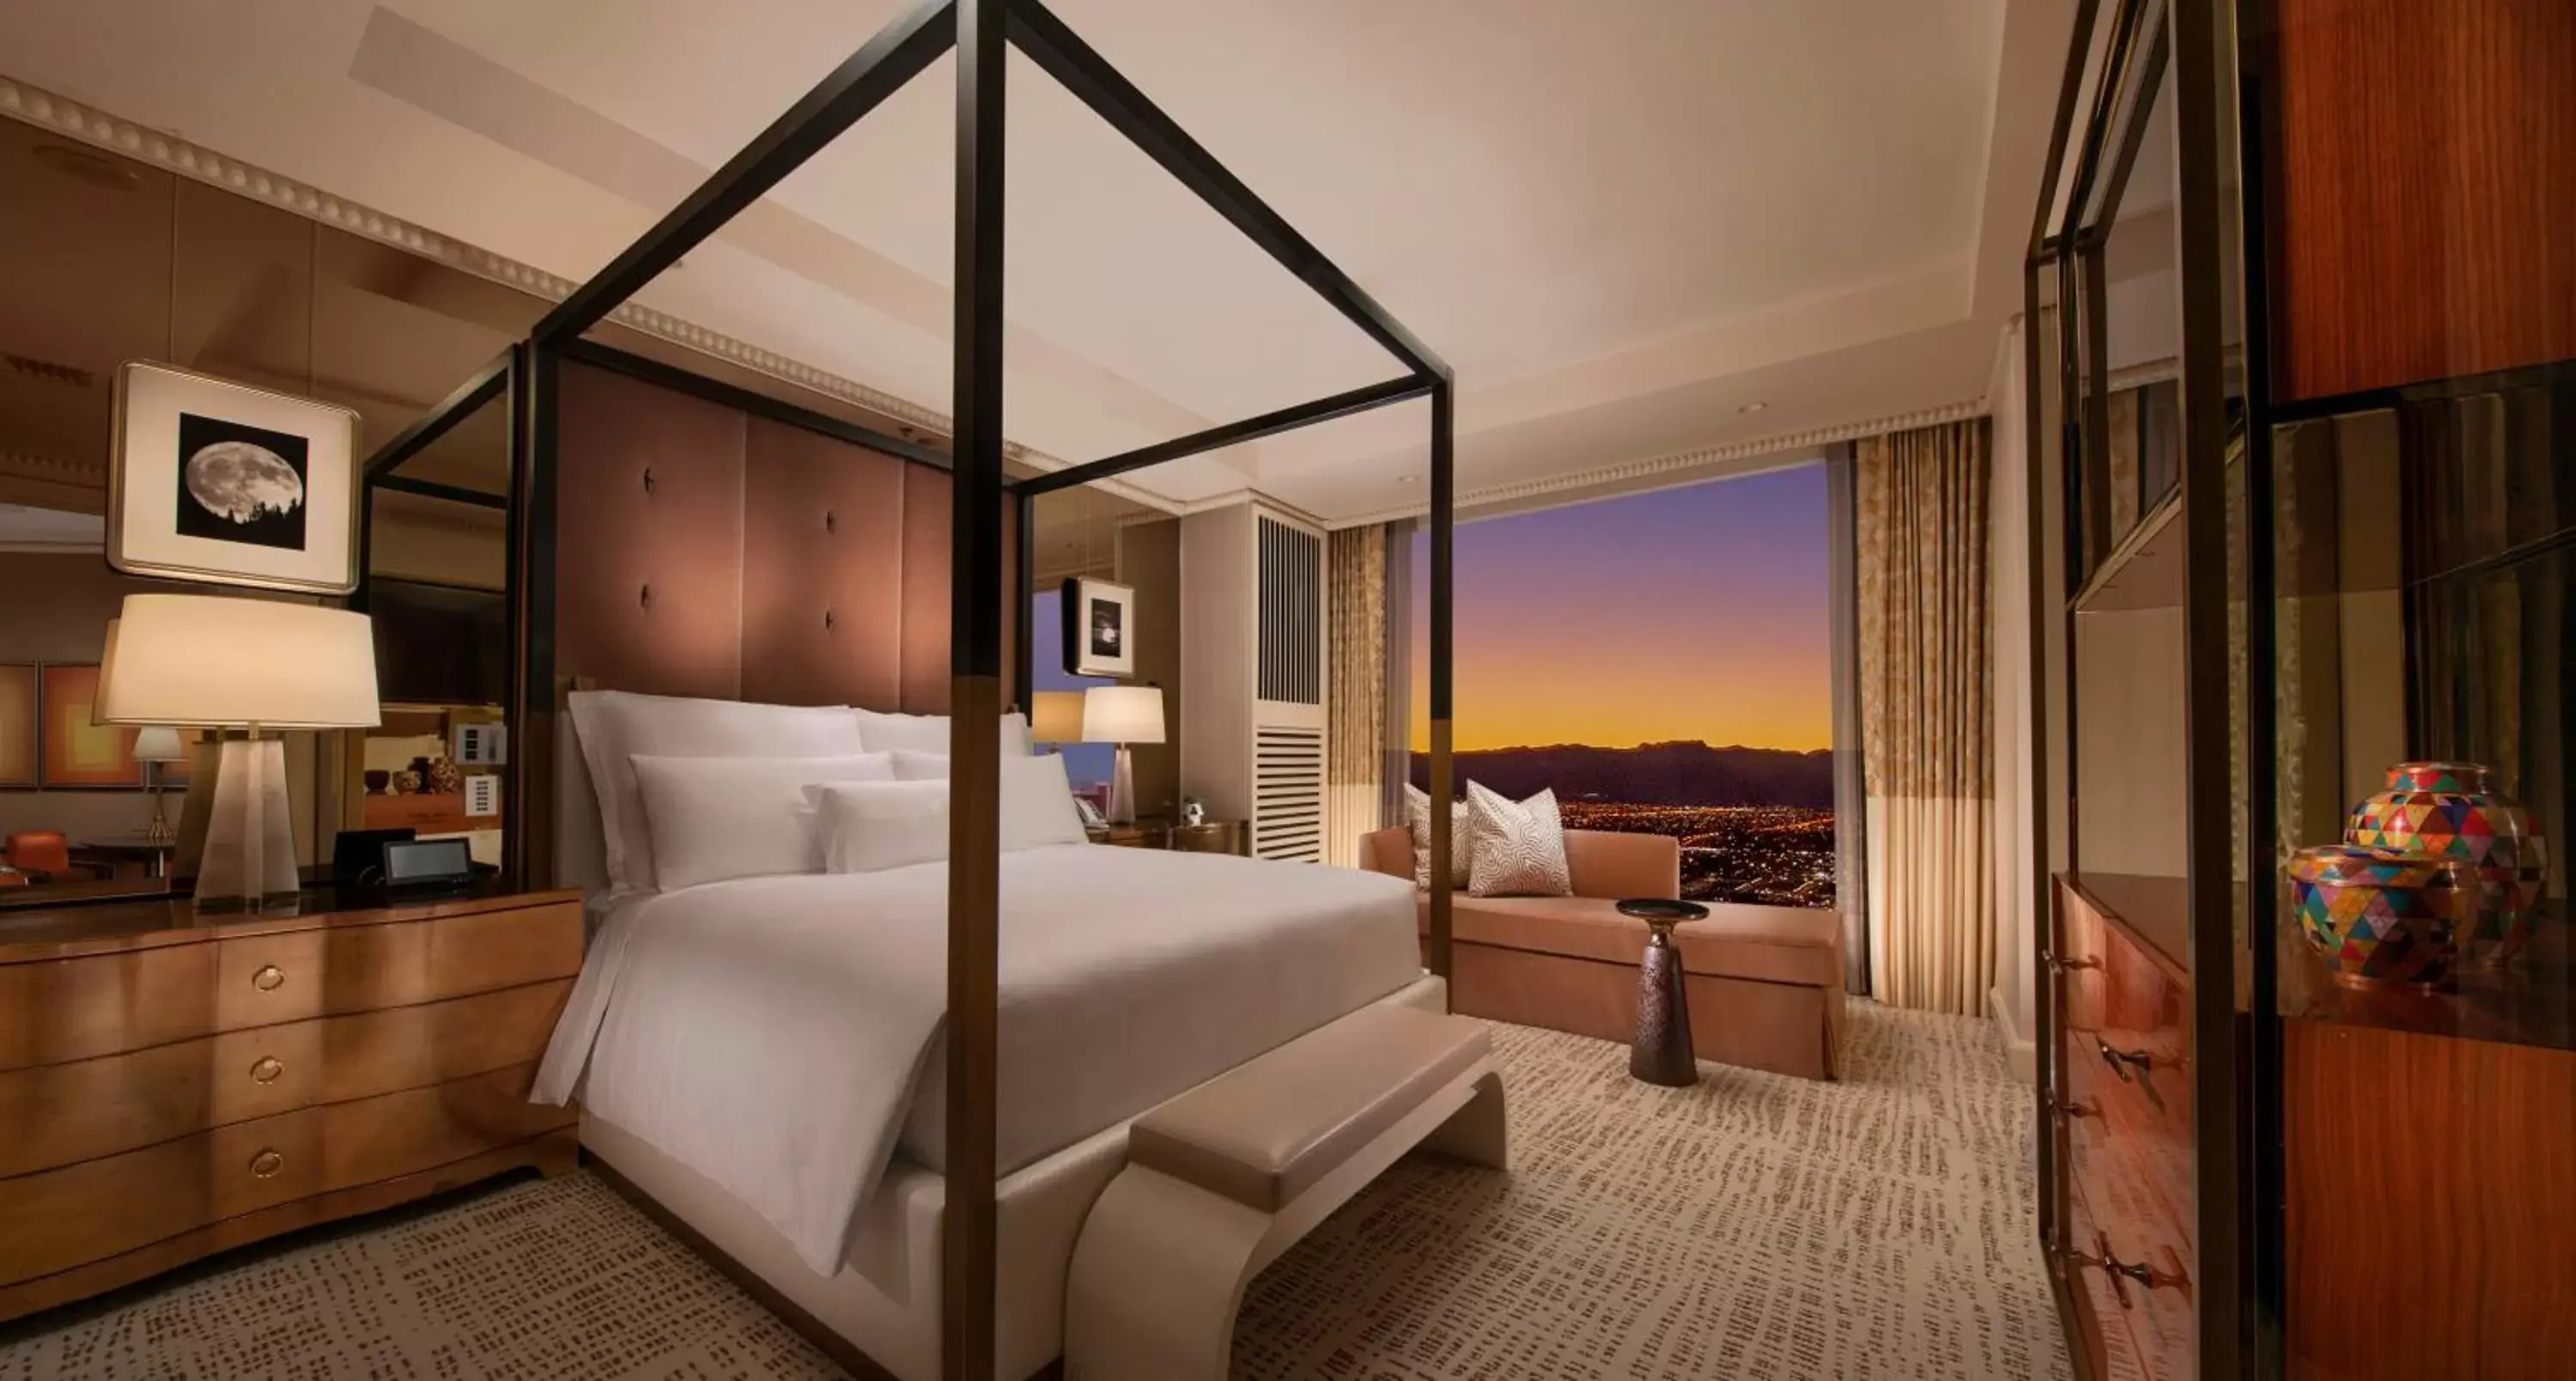 Bed in Wynn Las Vegas